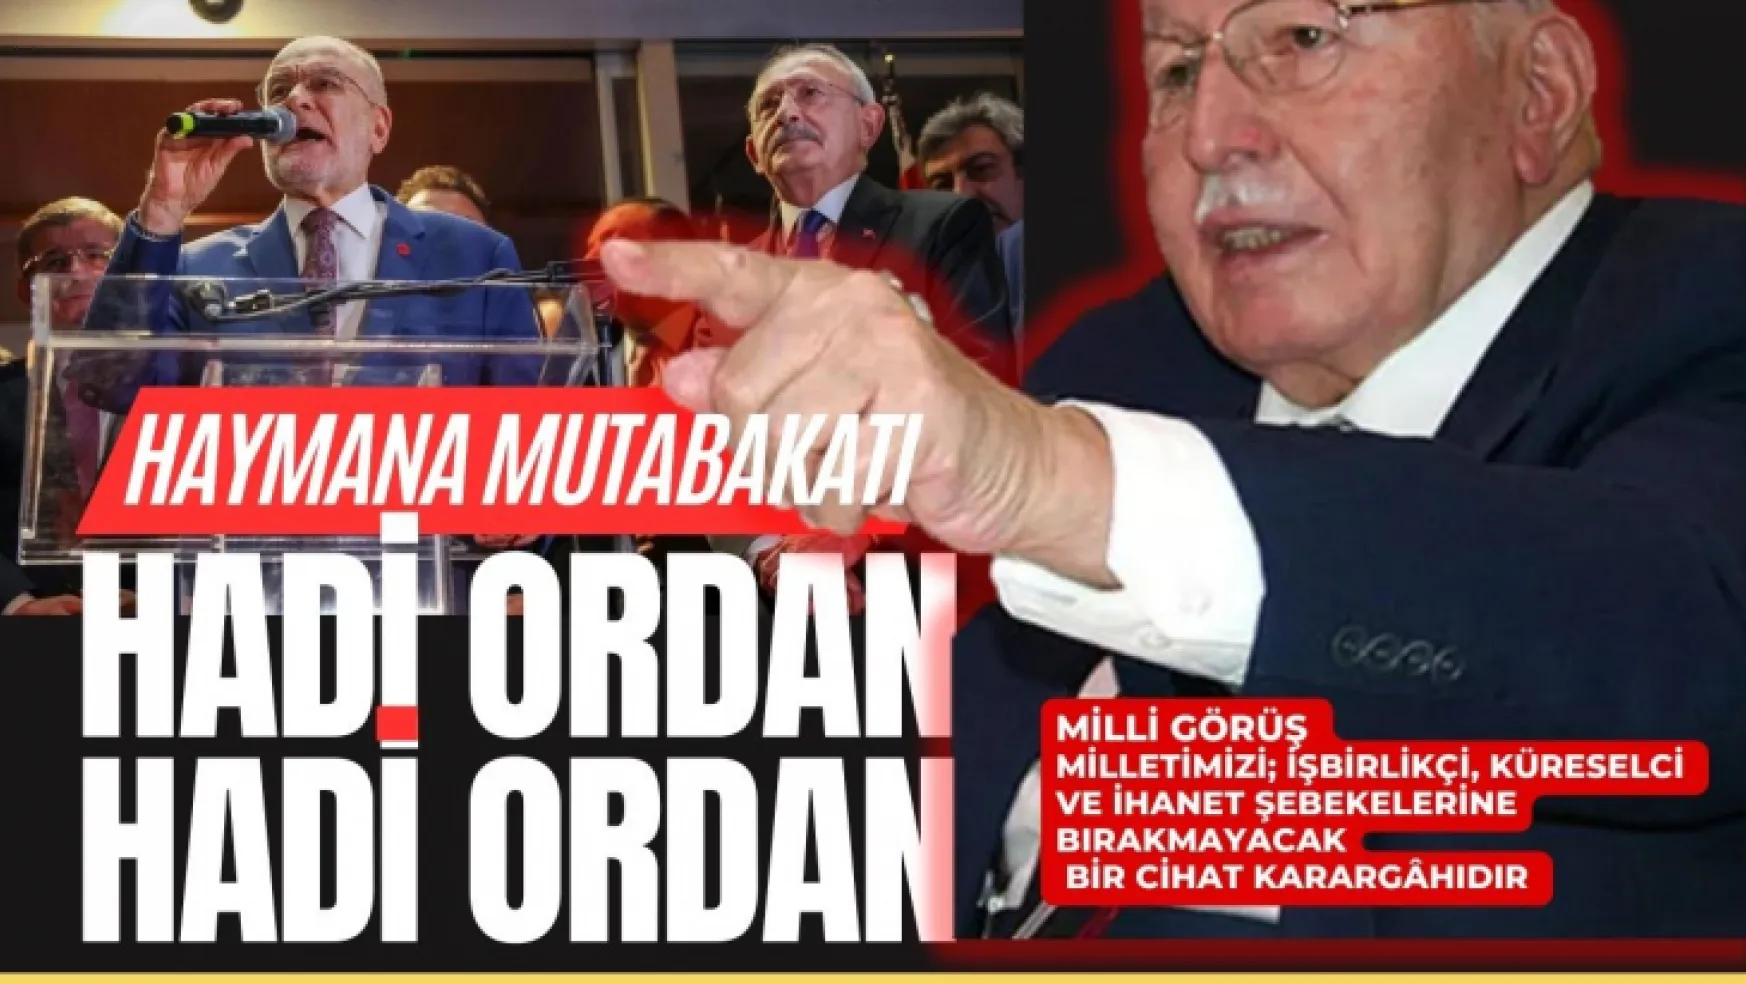 Saadet Partisi'nde Kılıçdaroğlu çatlağı: Kılıçdaroğlu'nun adaylığını tanımıyoruz.